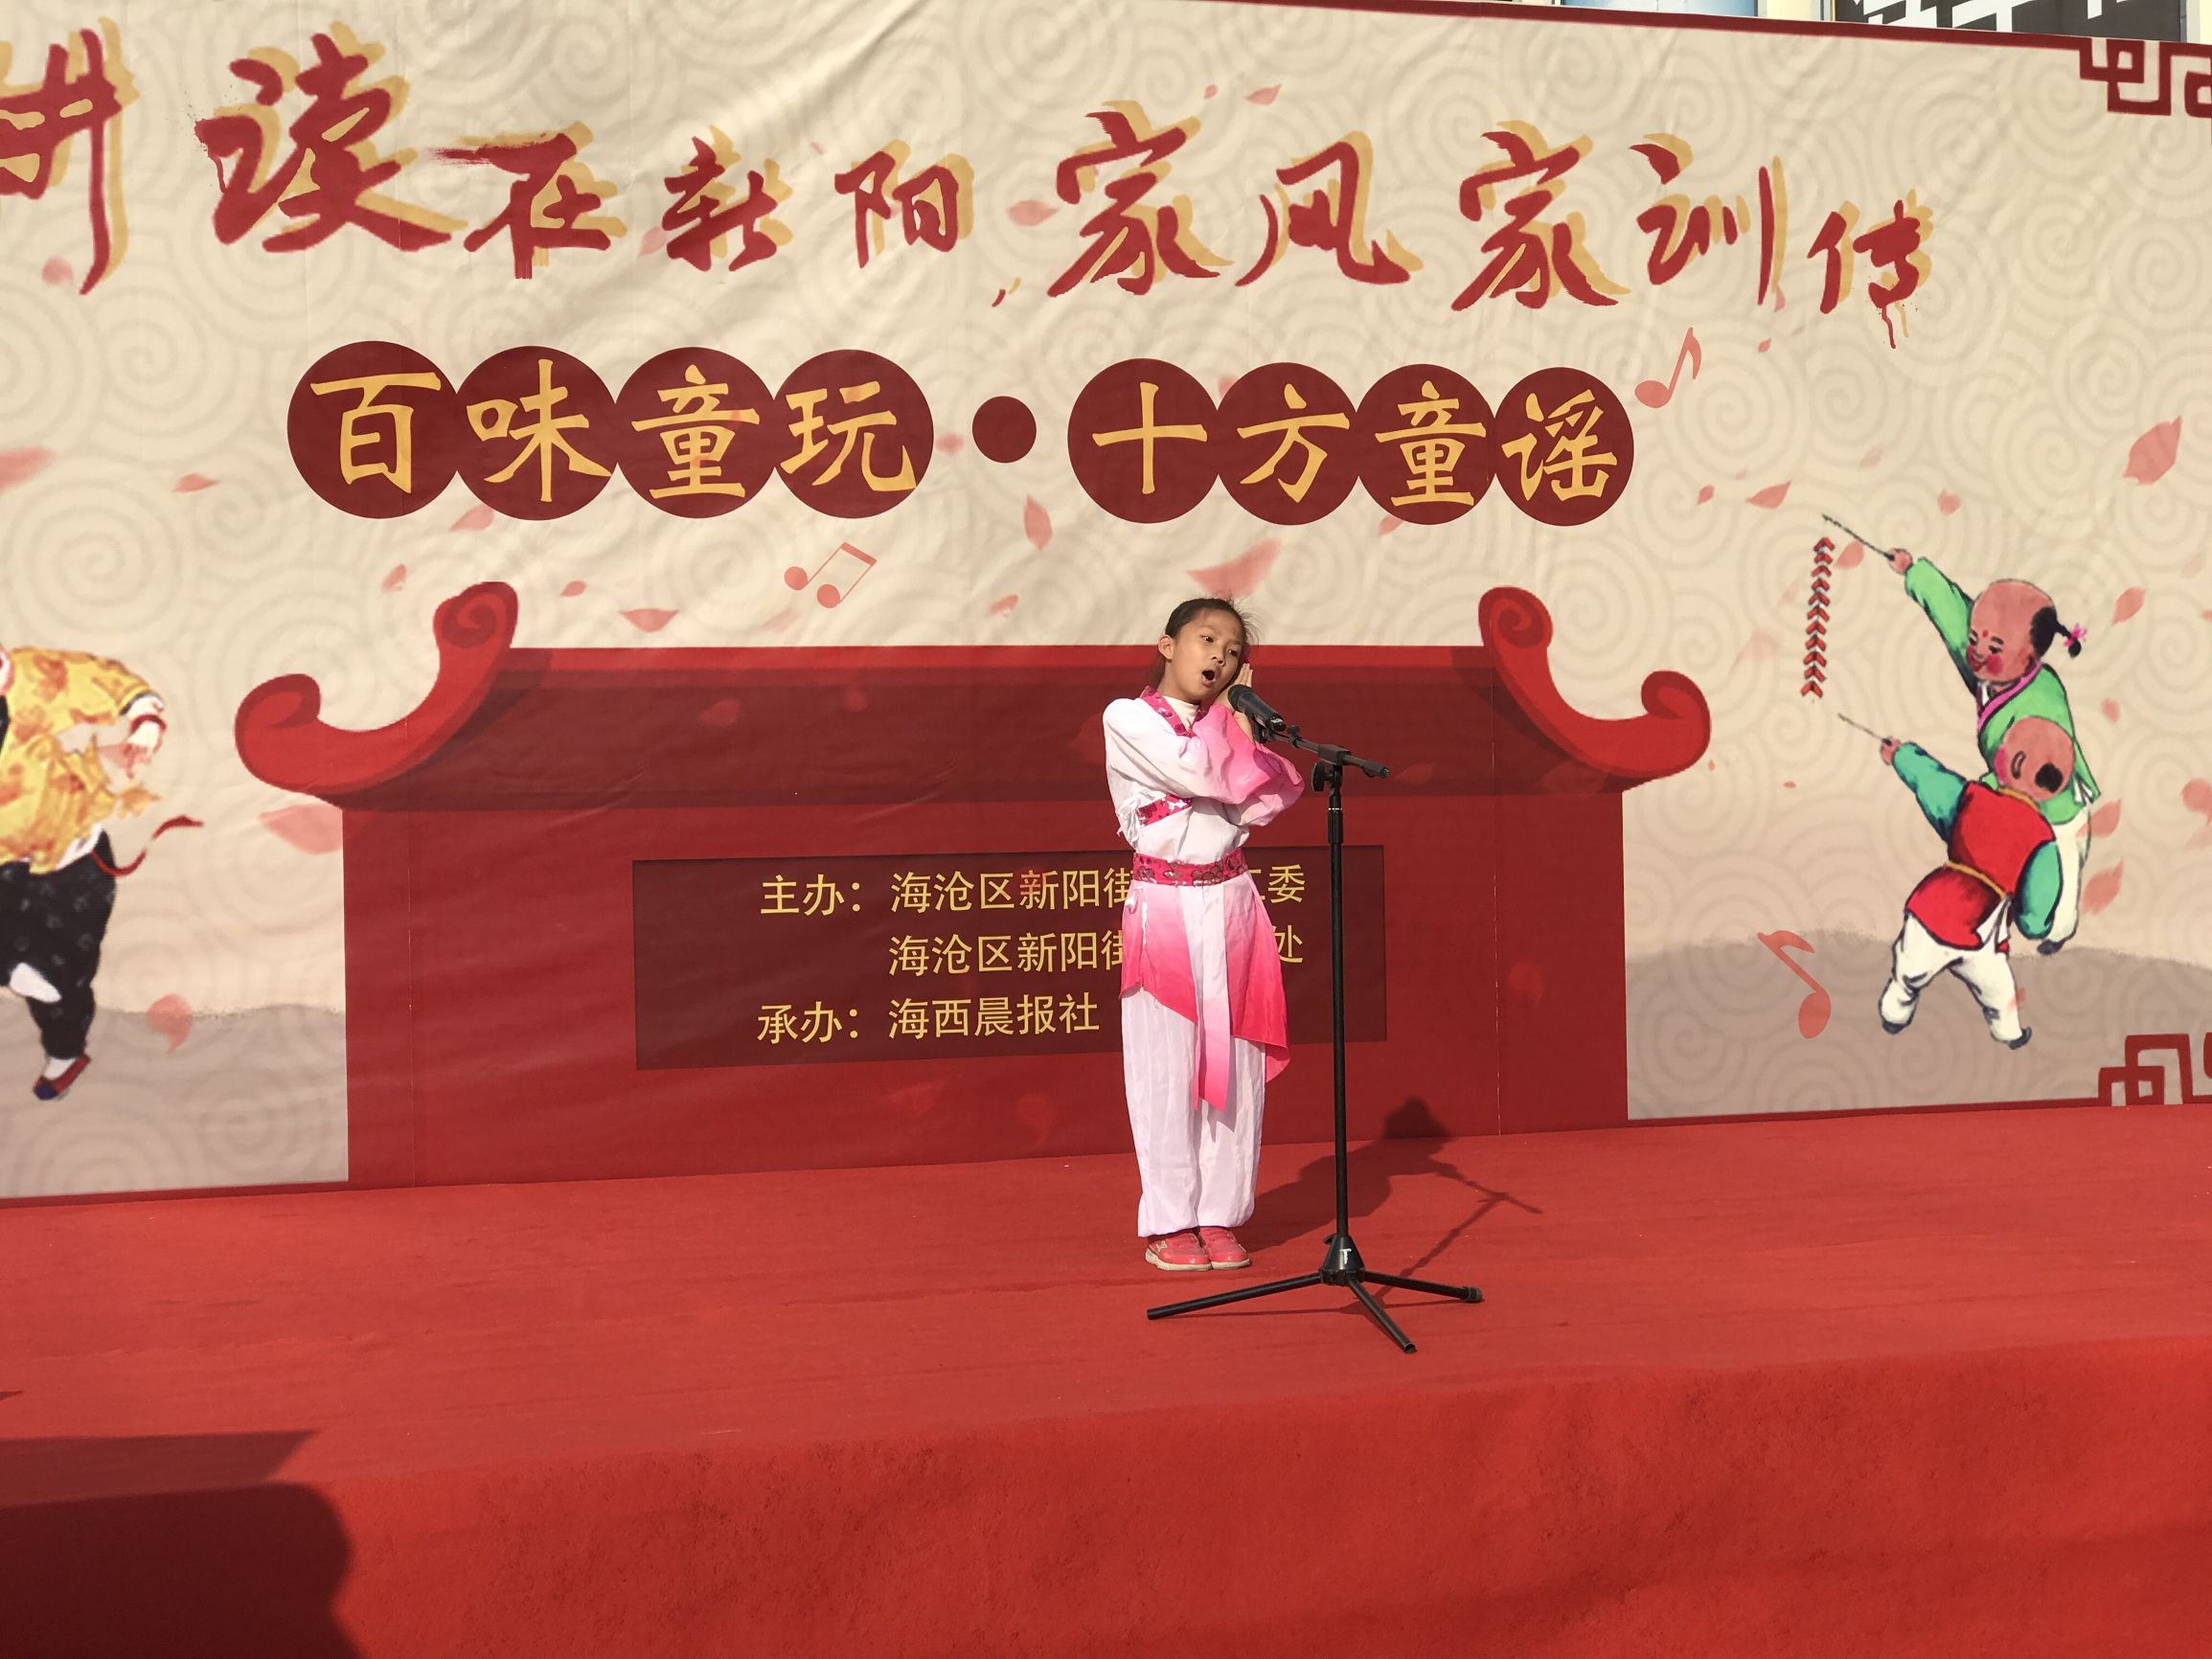 延续耕读，传承文化，“百味童玩·十方童谣”舞台活动在新阳举办